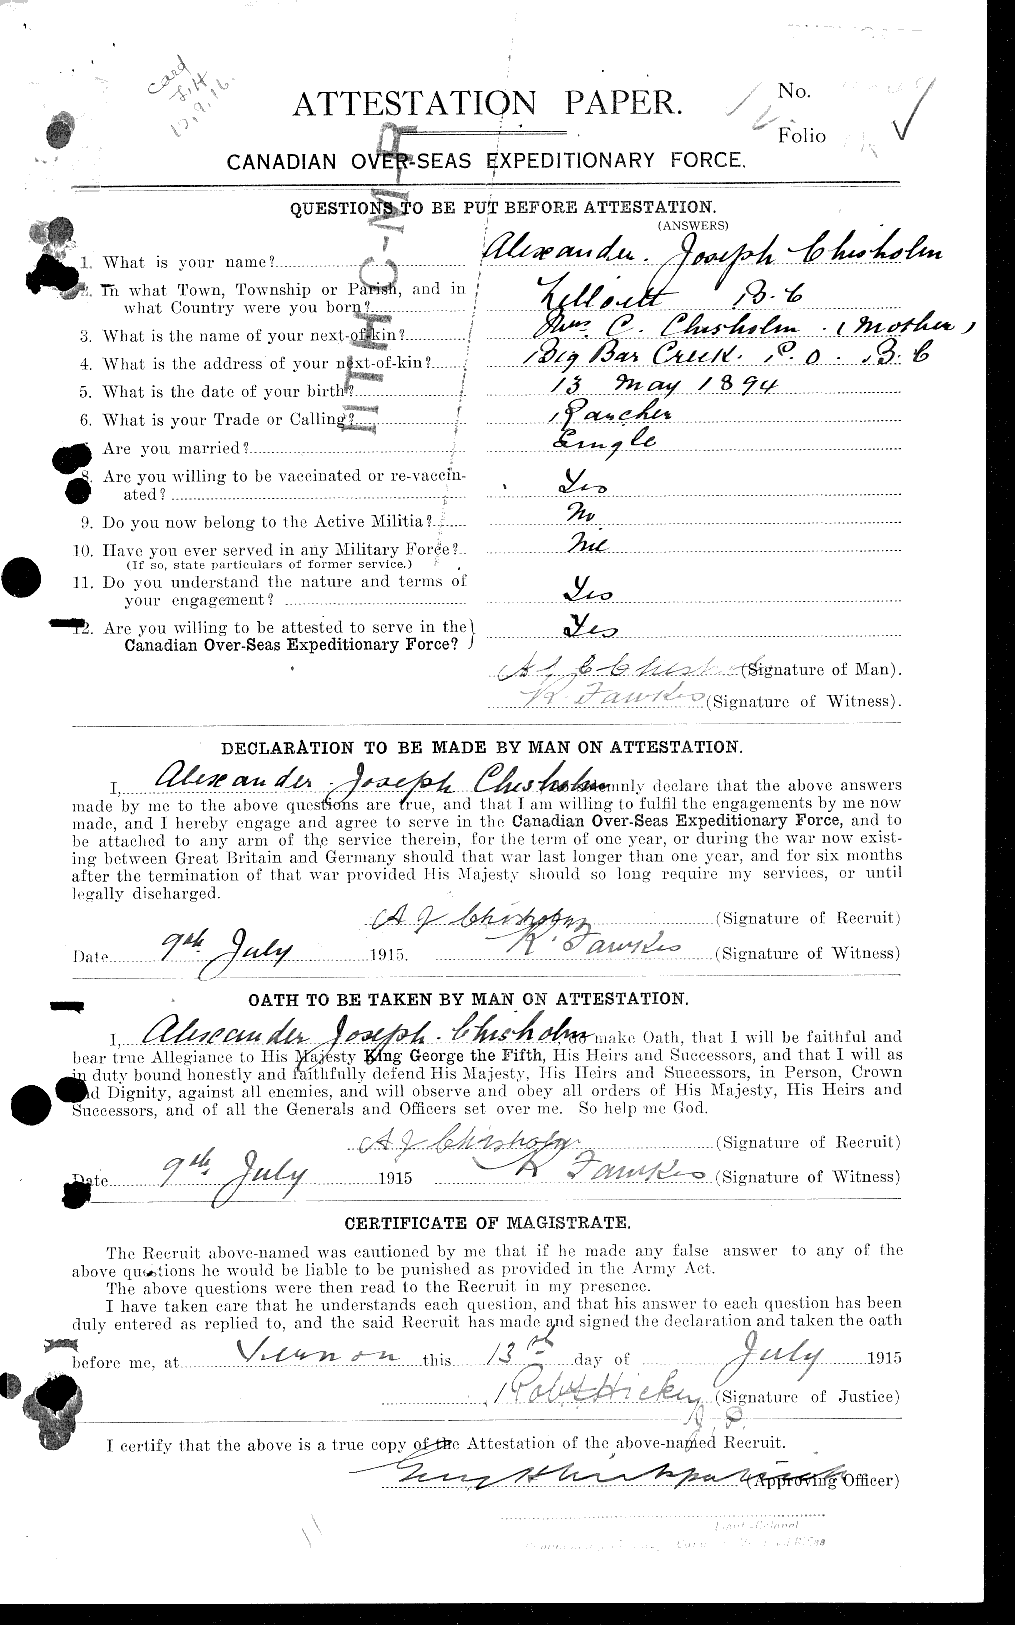 Dossiers du Personnel de la Première Guerre mondiale - CEC 018201a